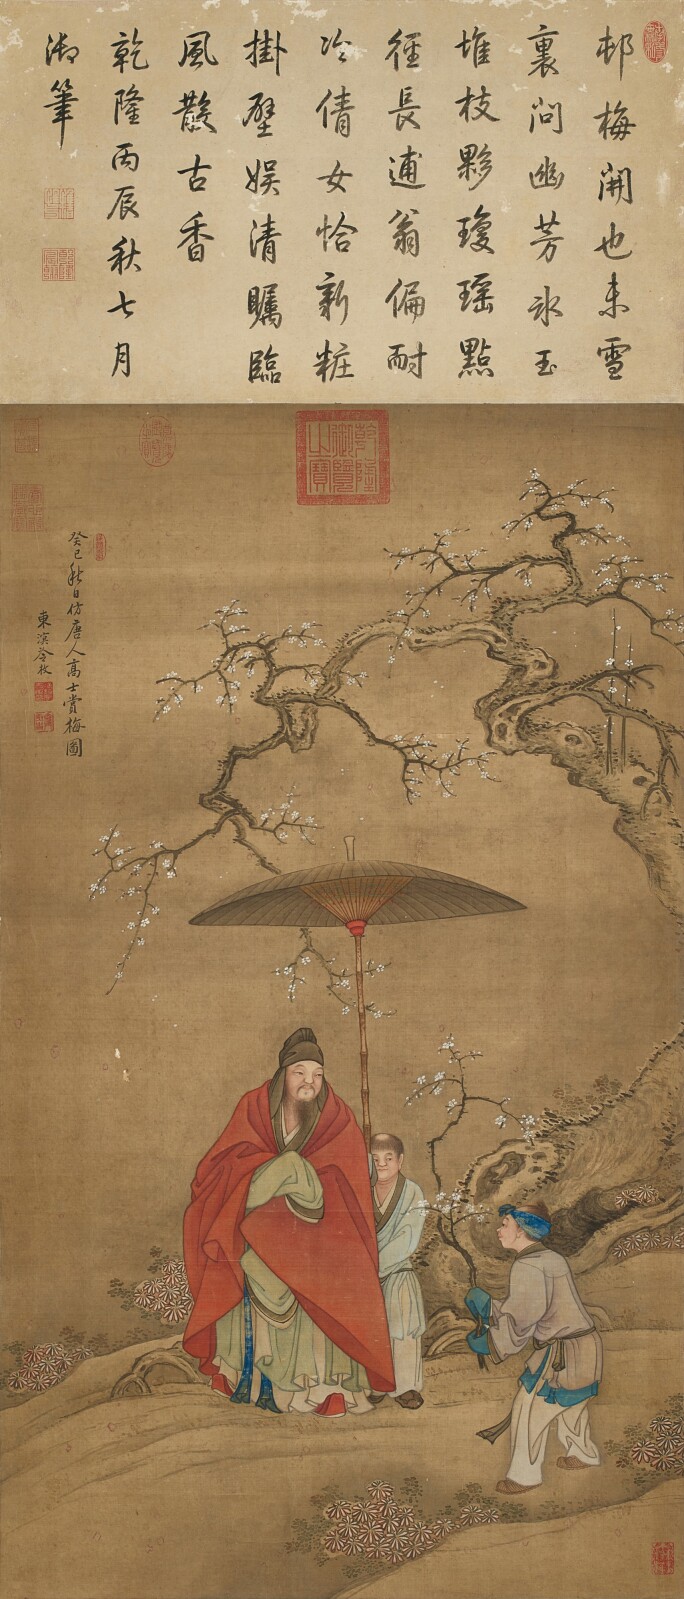 Pečeť používal císař Čchien-lung k označení svých oblíbených uměleckých děl. Což také zvýšilo prestiž jejich autora.